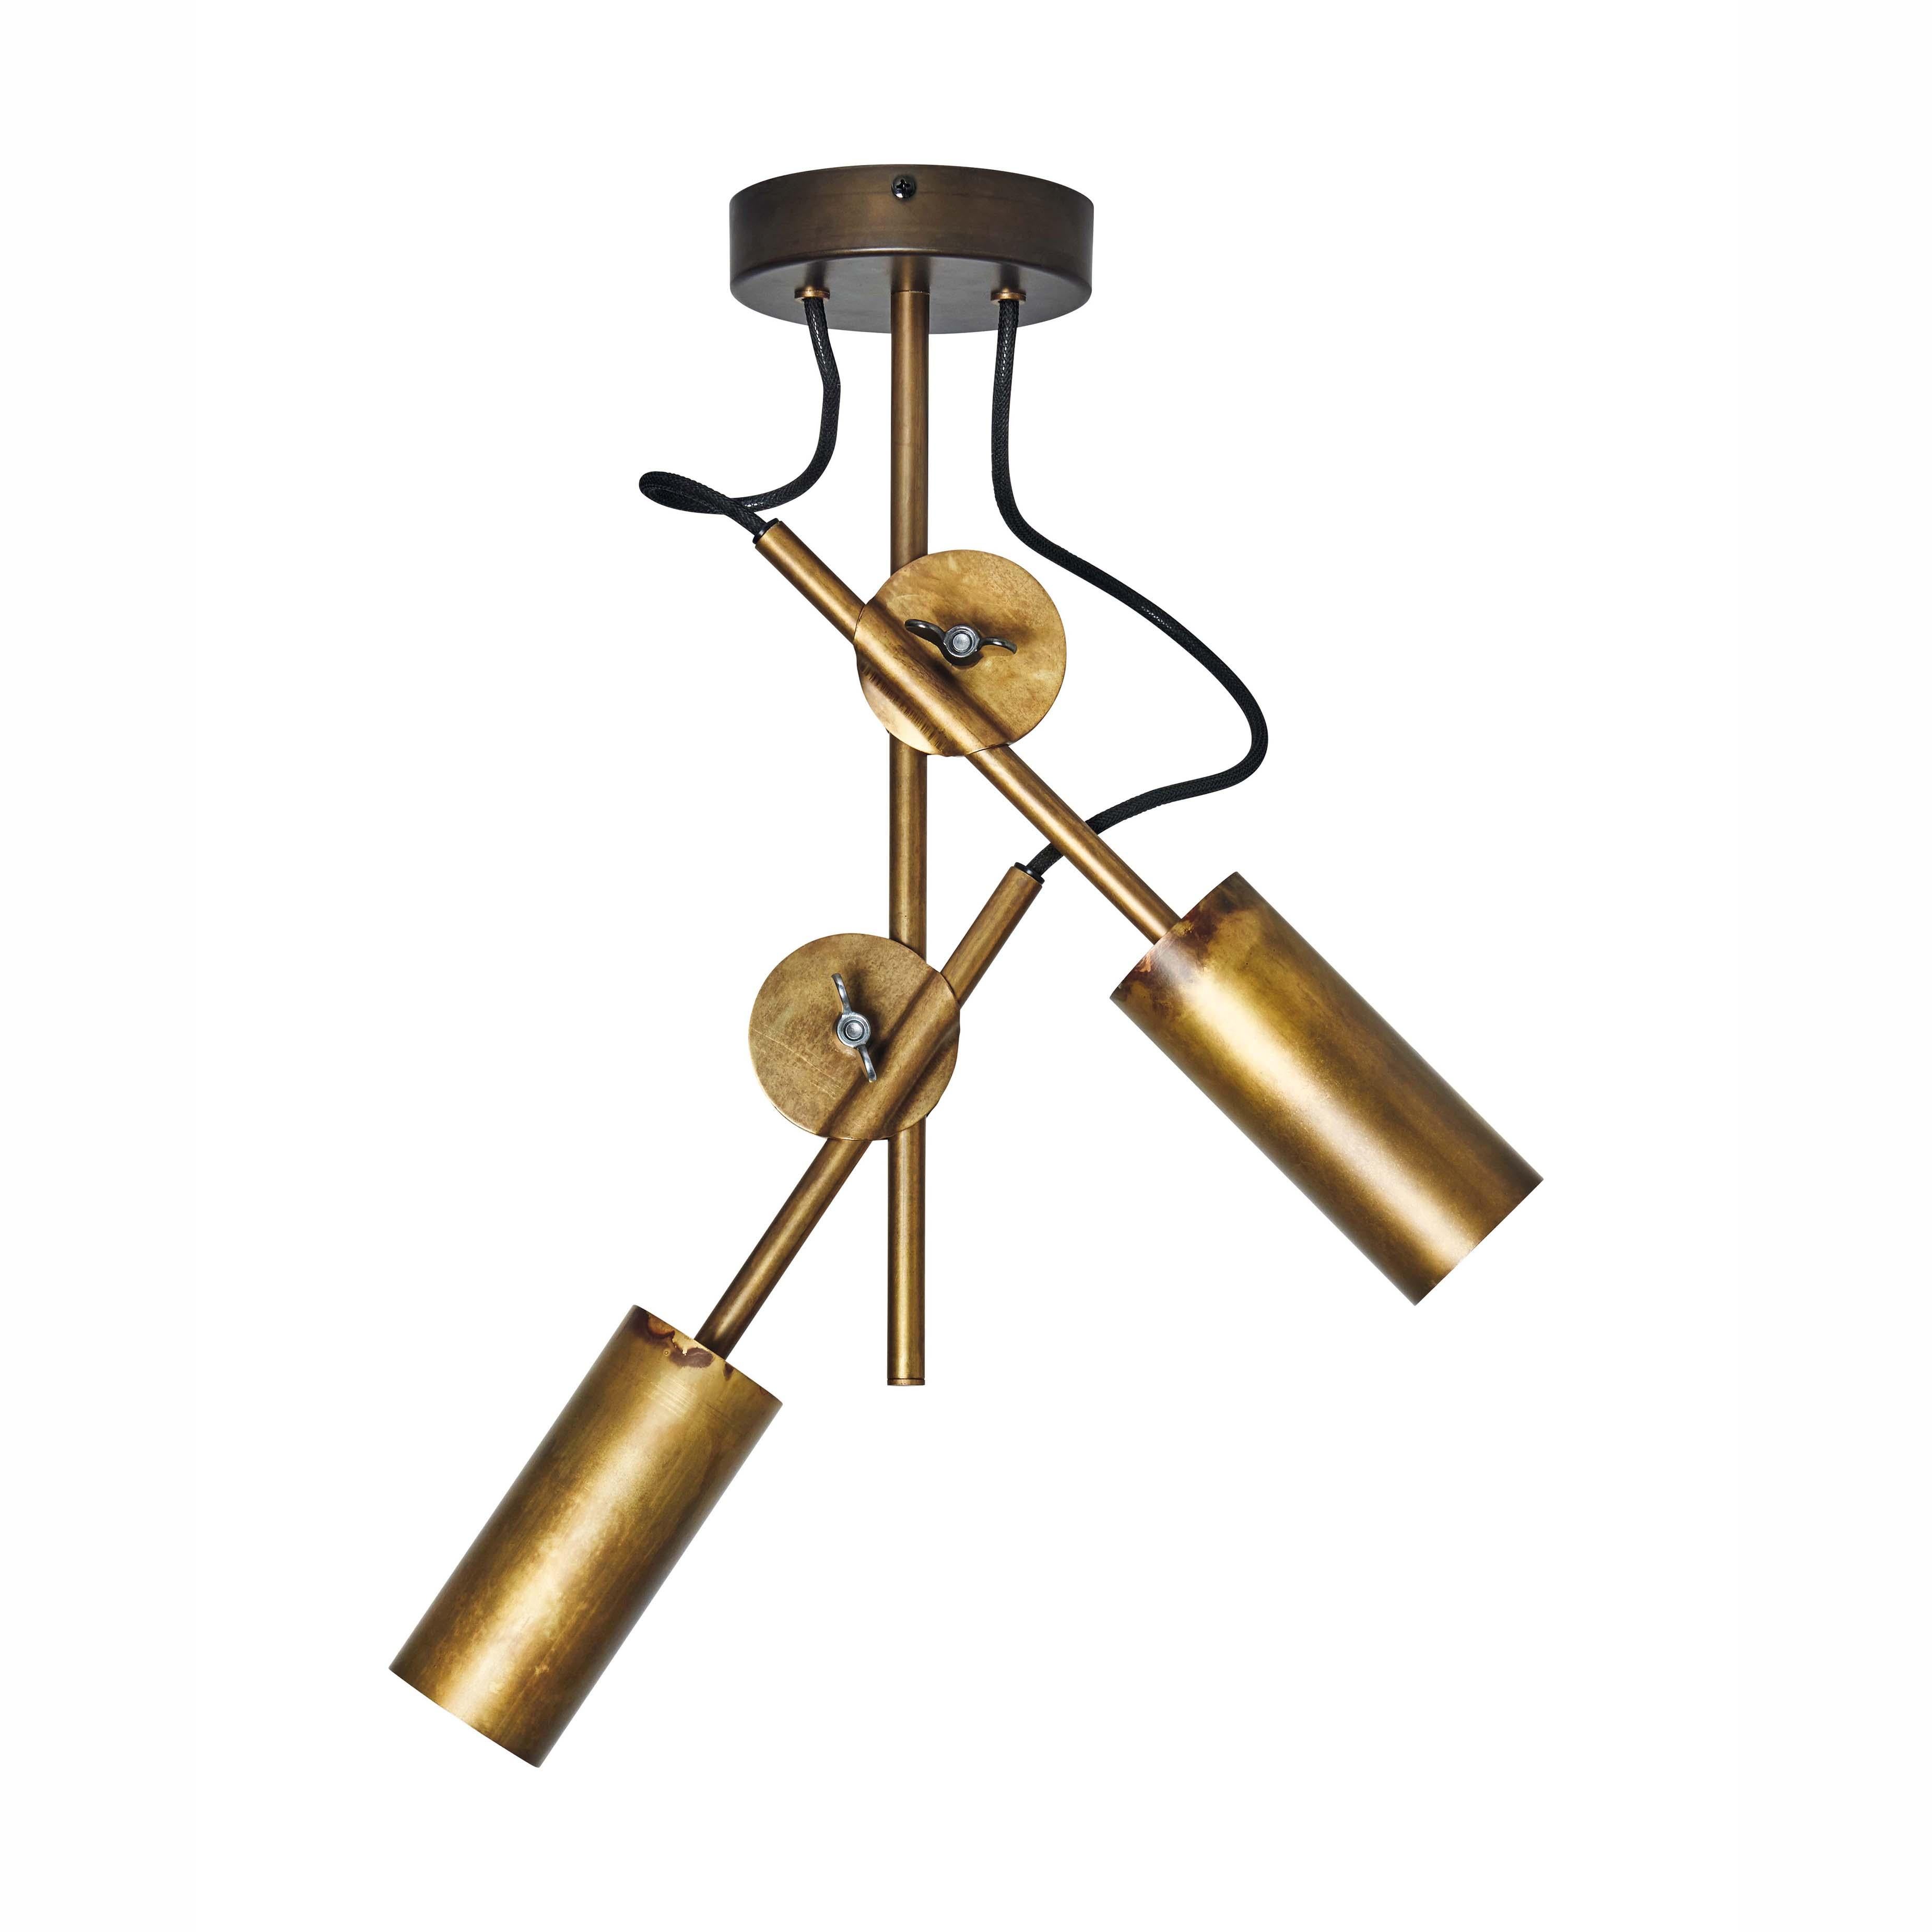 Johan Carpner 3452-6 Stav Spot 2 Brass Ceiling Lamp by Konsthantverk For Sale 1